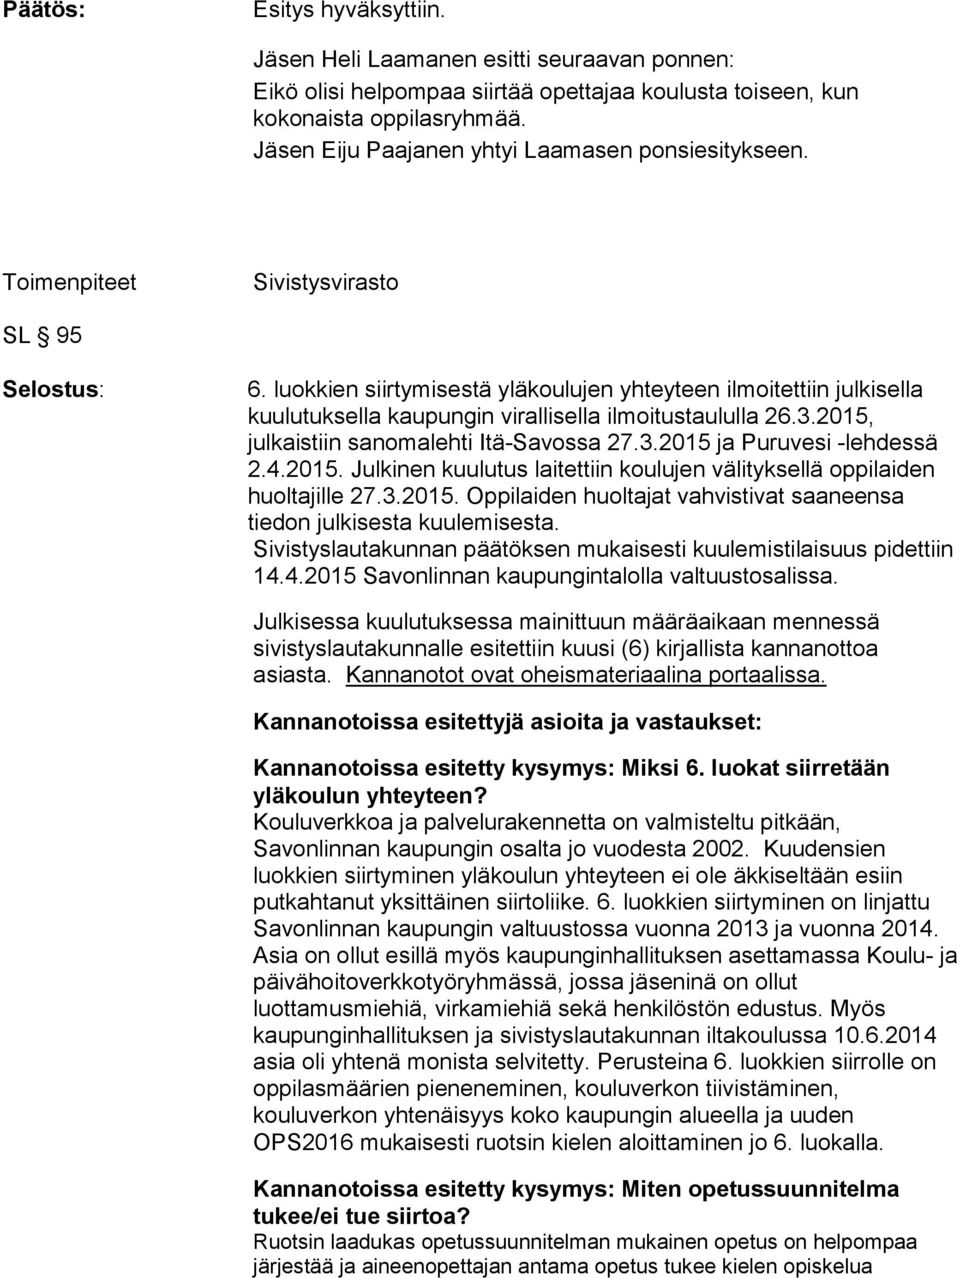 luokkien siirtymisestä yläkoulujen yhteyteen ilmoitettiin julkisella kuulutuksella kaupungin virallisella ilmoitustaululla 26.3.2015, julkaistiin sanomalehti Itä-Savossa 27.3.2015 ja Puruvesi -lehdessä 2.